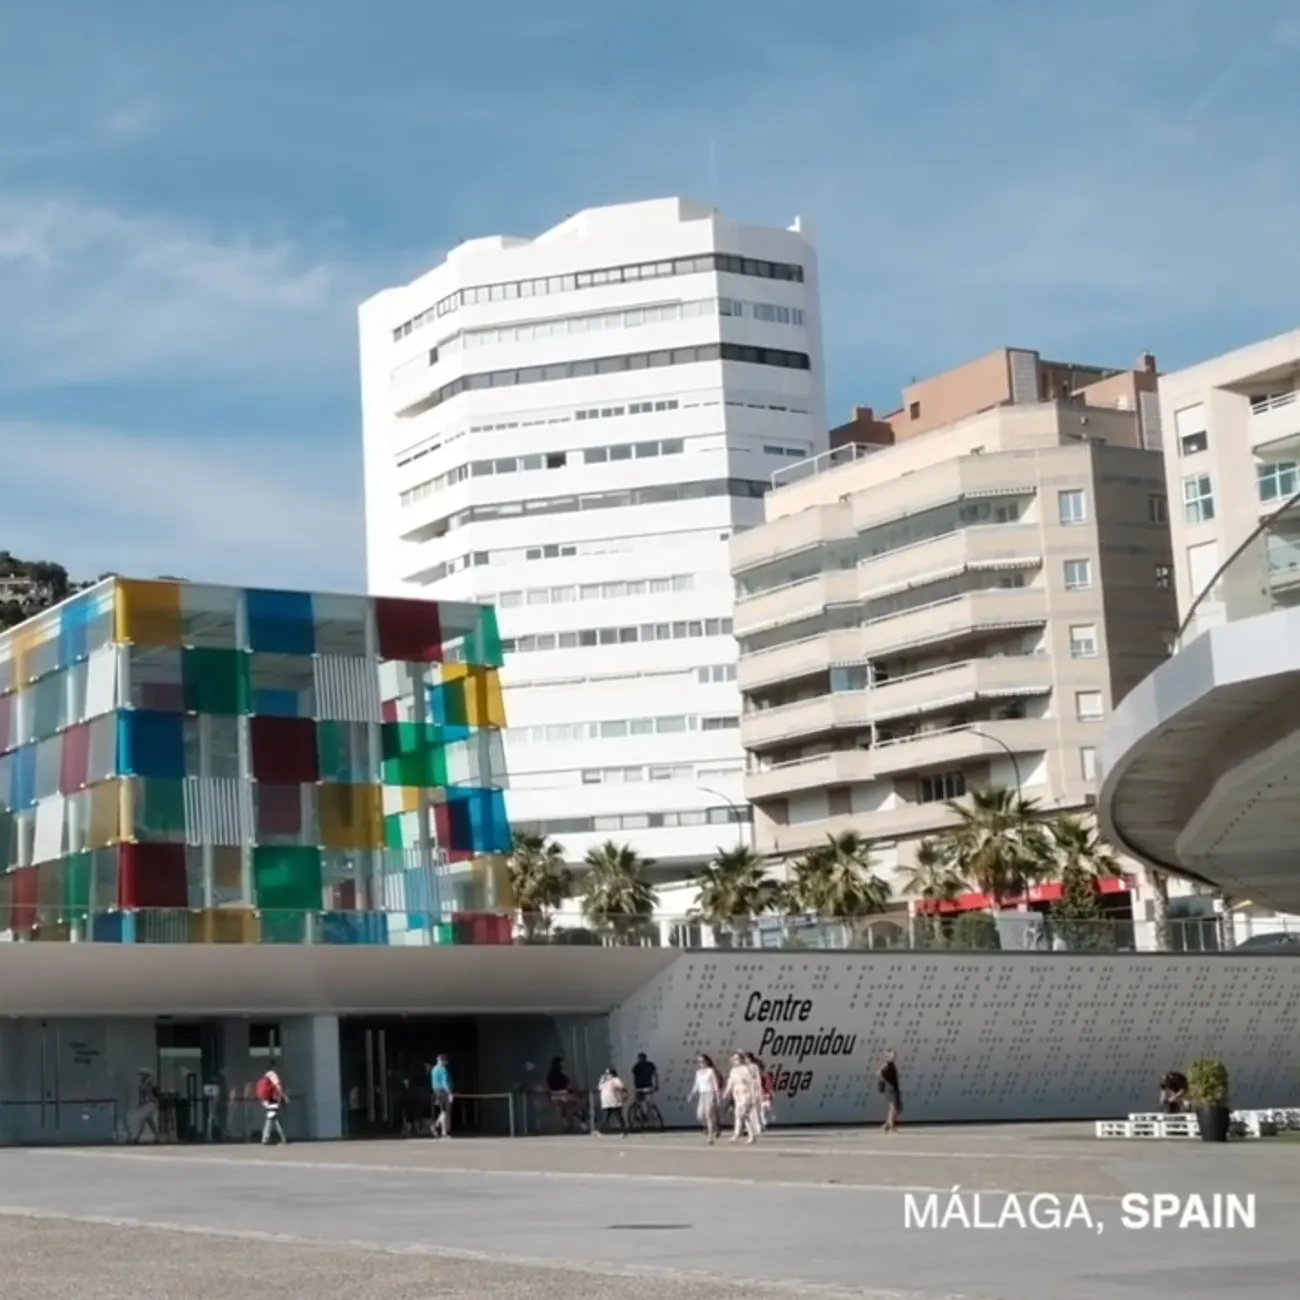 Captura del video, se muestra el edificio Pompidou de Málaga